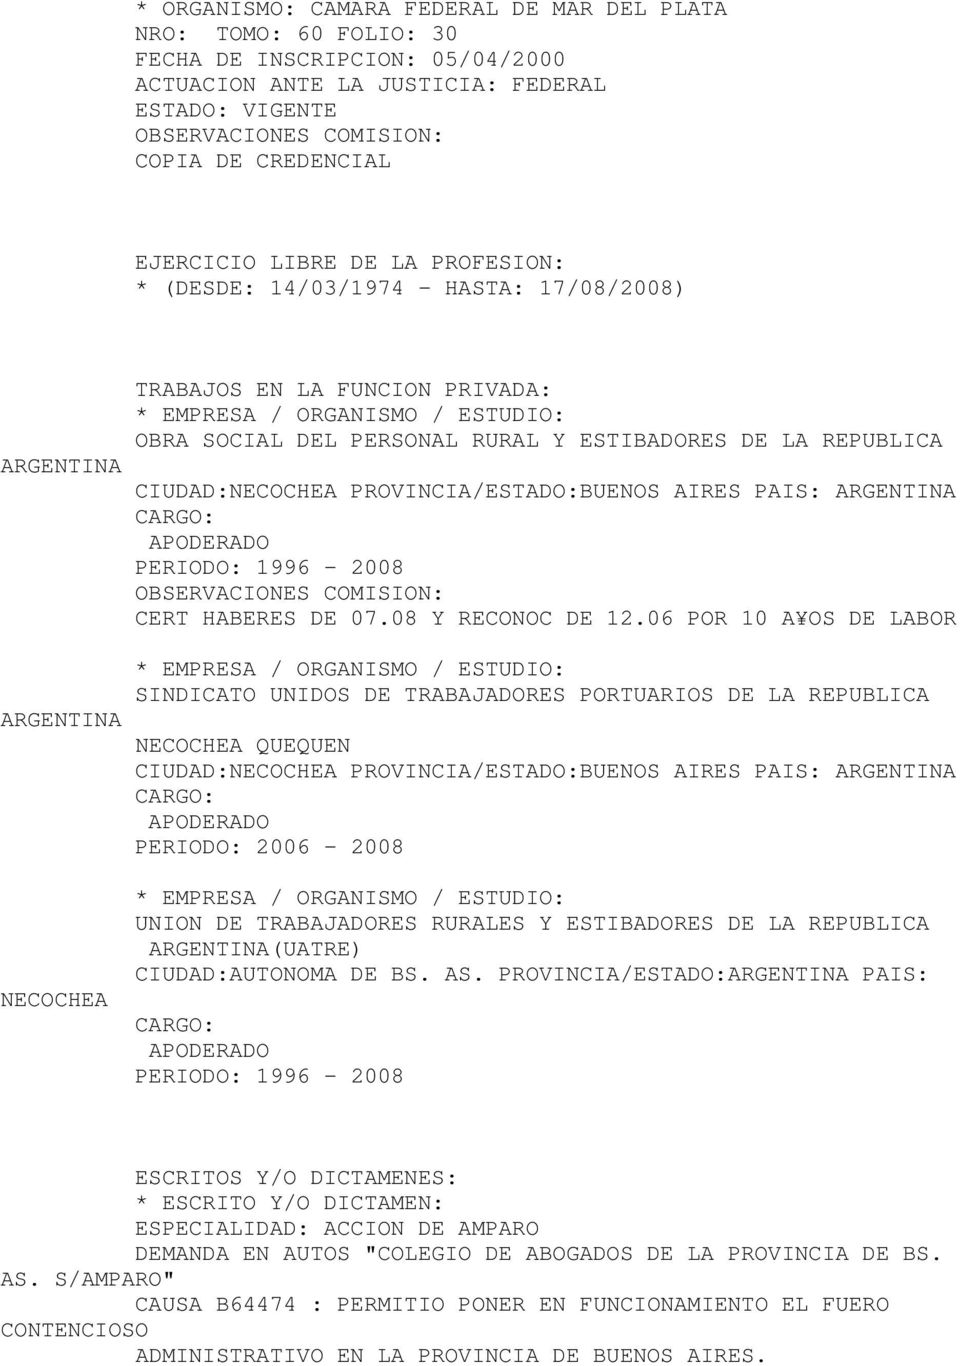 PROVINCIA/ESTADO:BUENOS AIRES PAIS: CARGO: APODERADO PERIODO: 1996-2008 CERT HABERES DE 07.08 Y RECONOC DE 12.